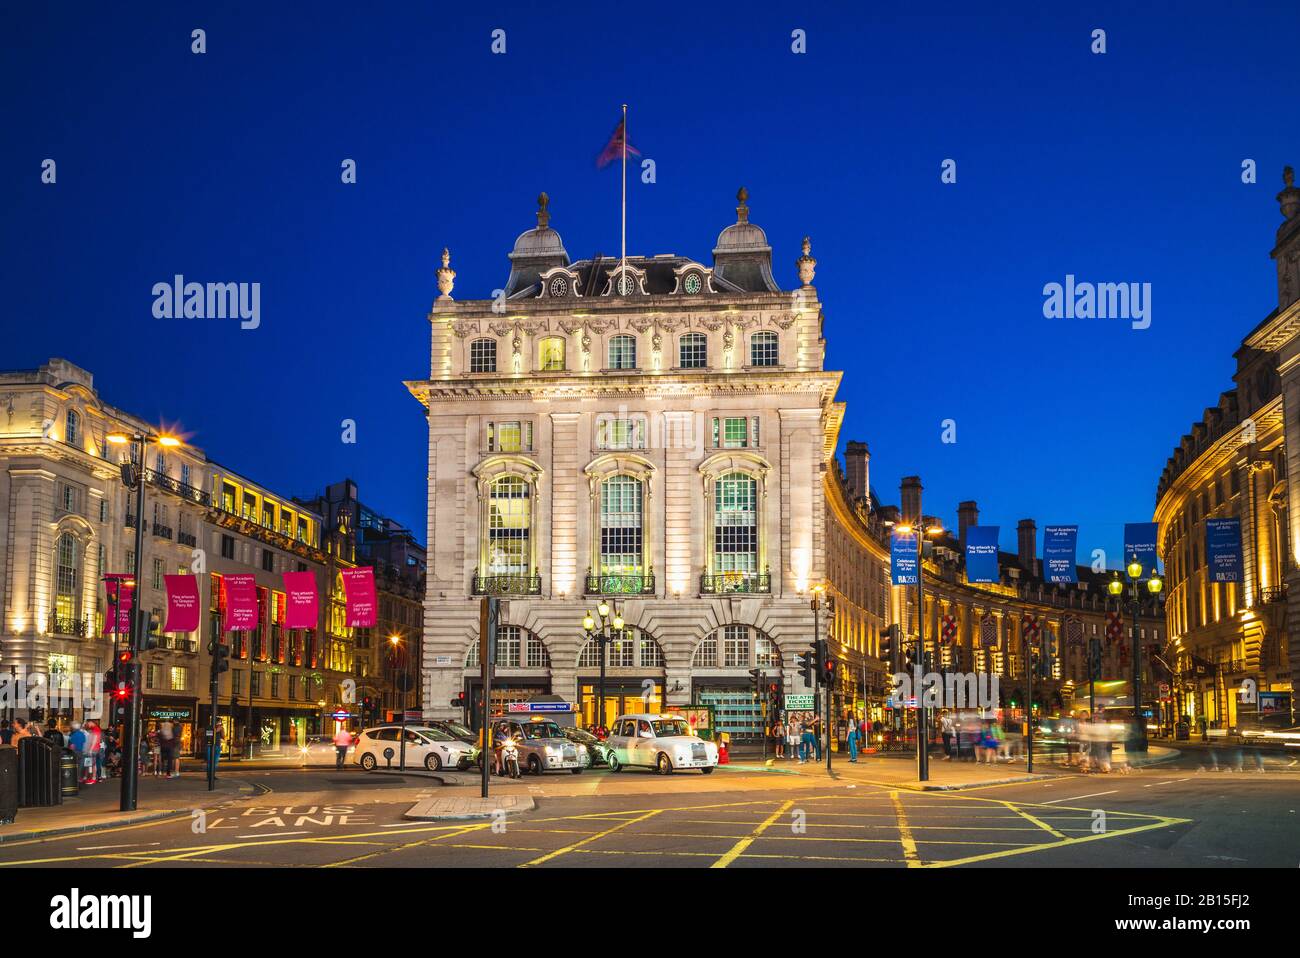 Londres, Reino Unido - 3 de julio de 2018: Vista nocturna de piccadilly Circus, un cruce de carreteras y espacio público del West End de Londres en la ciudad de Westminster. Foto de stock